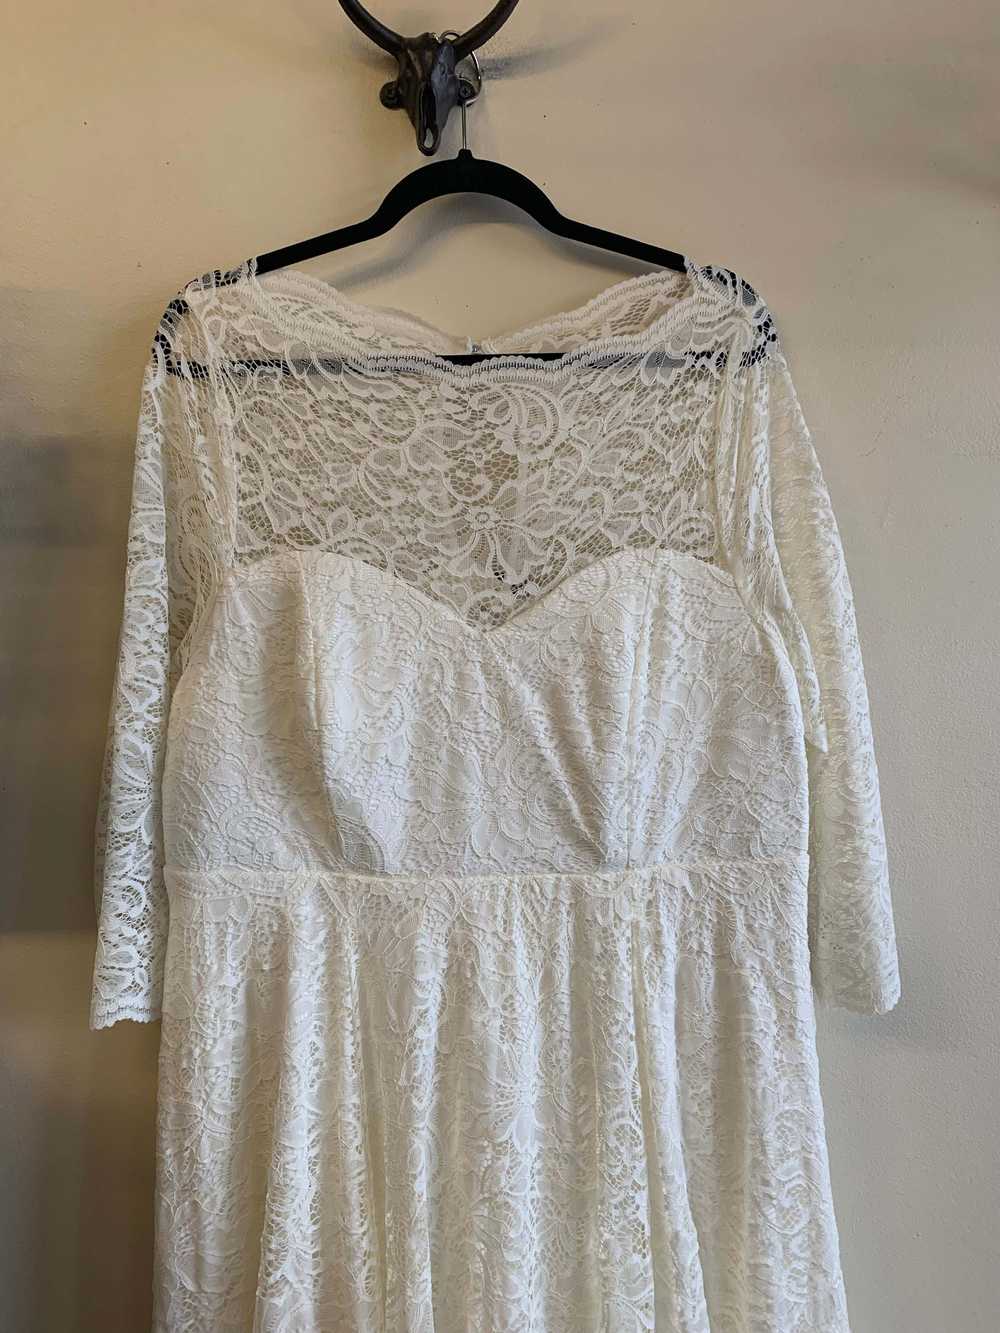 Torrid Ivory Lace Wedding Dress - 2X - image 4